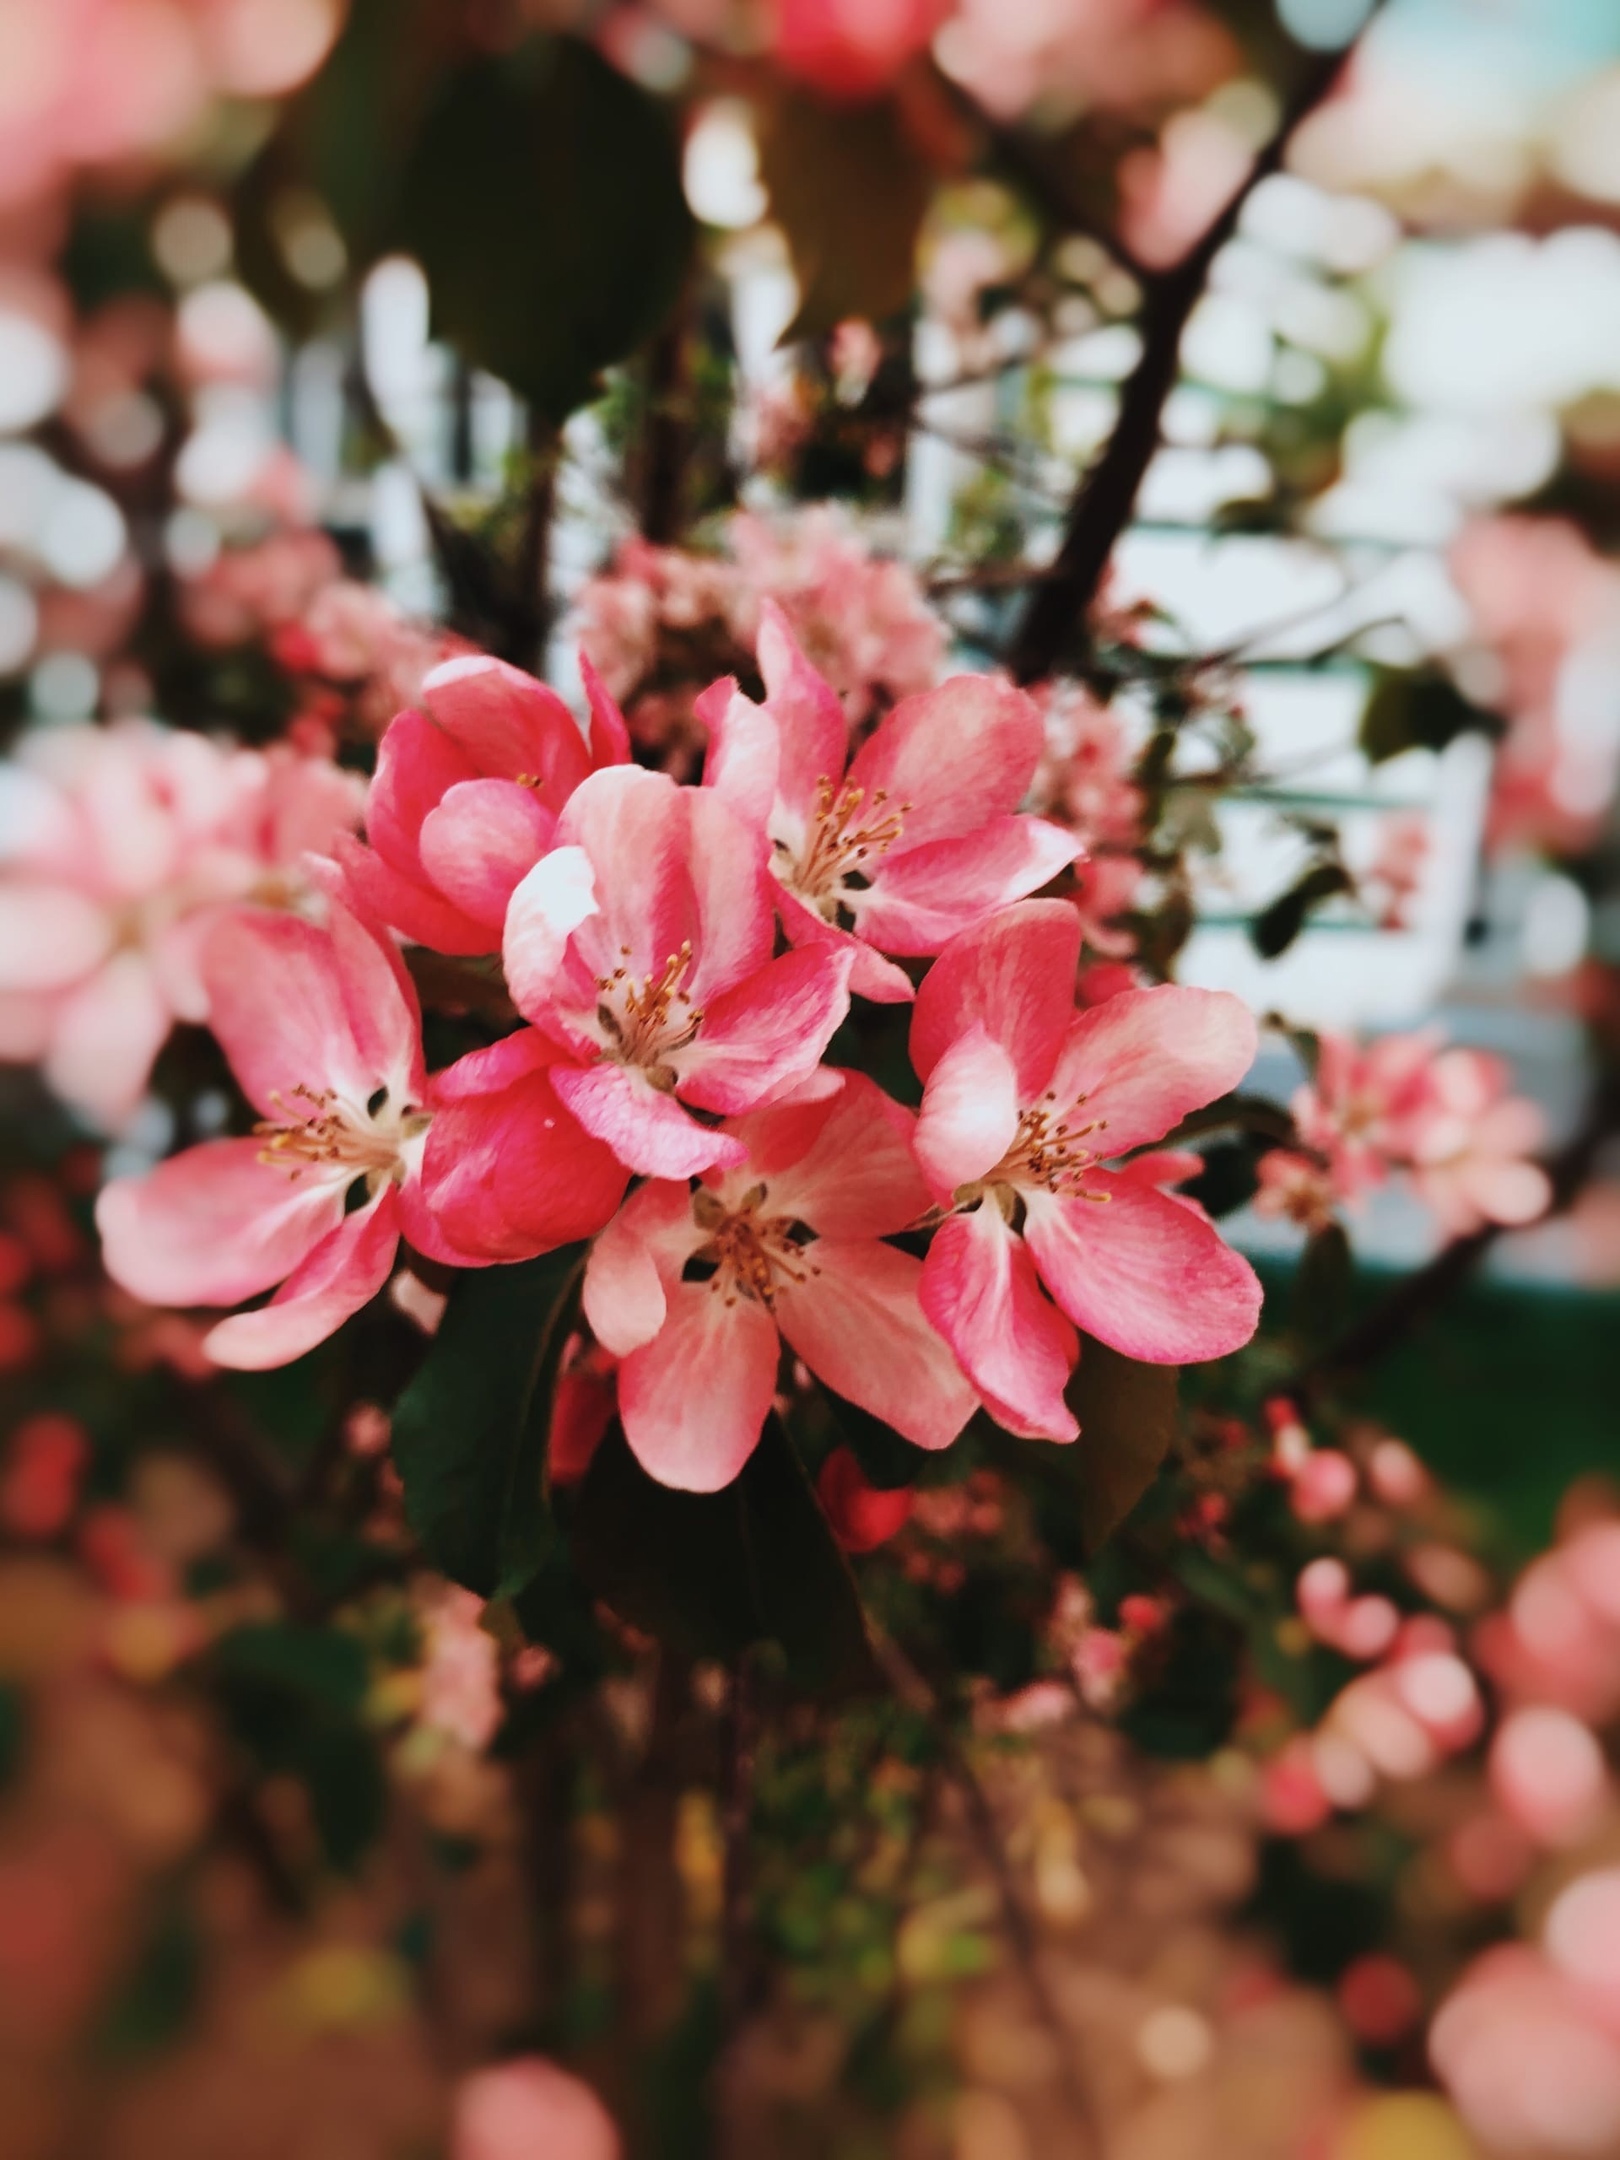 Любуемся майским цветением и узнаем, где прямо сейчас можно сделать красивые снимки